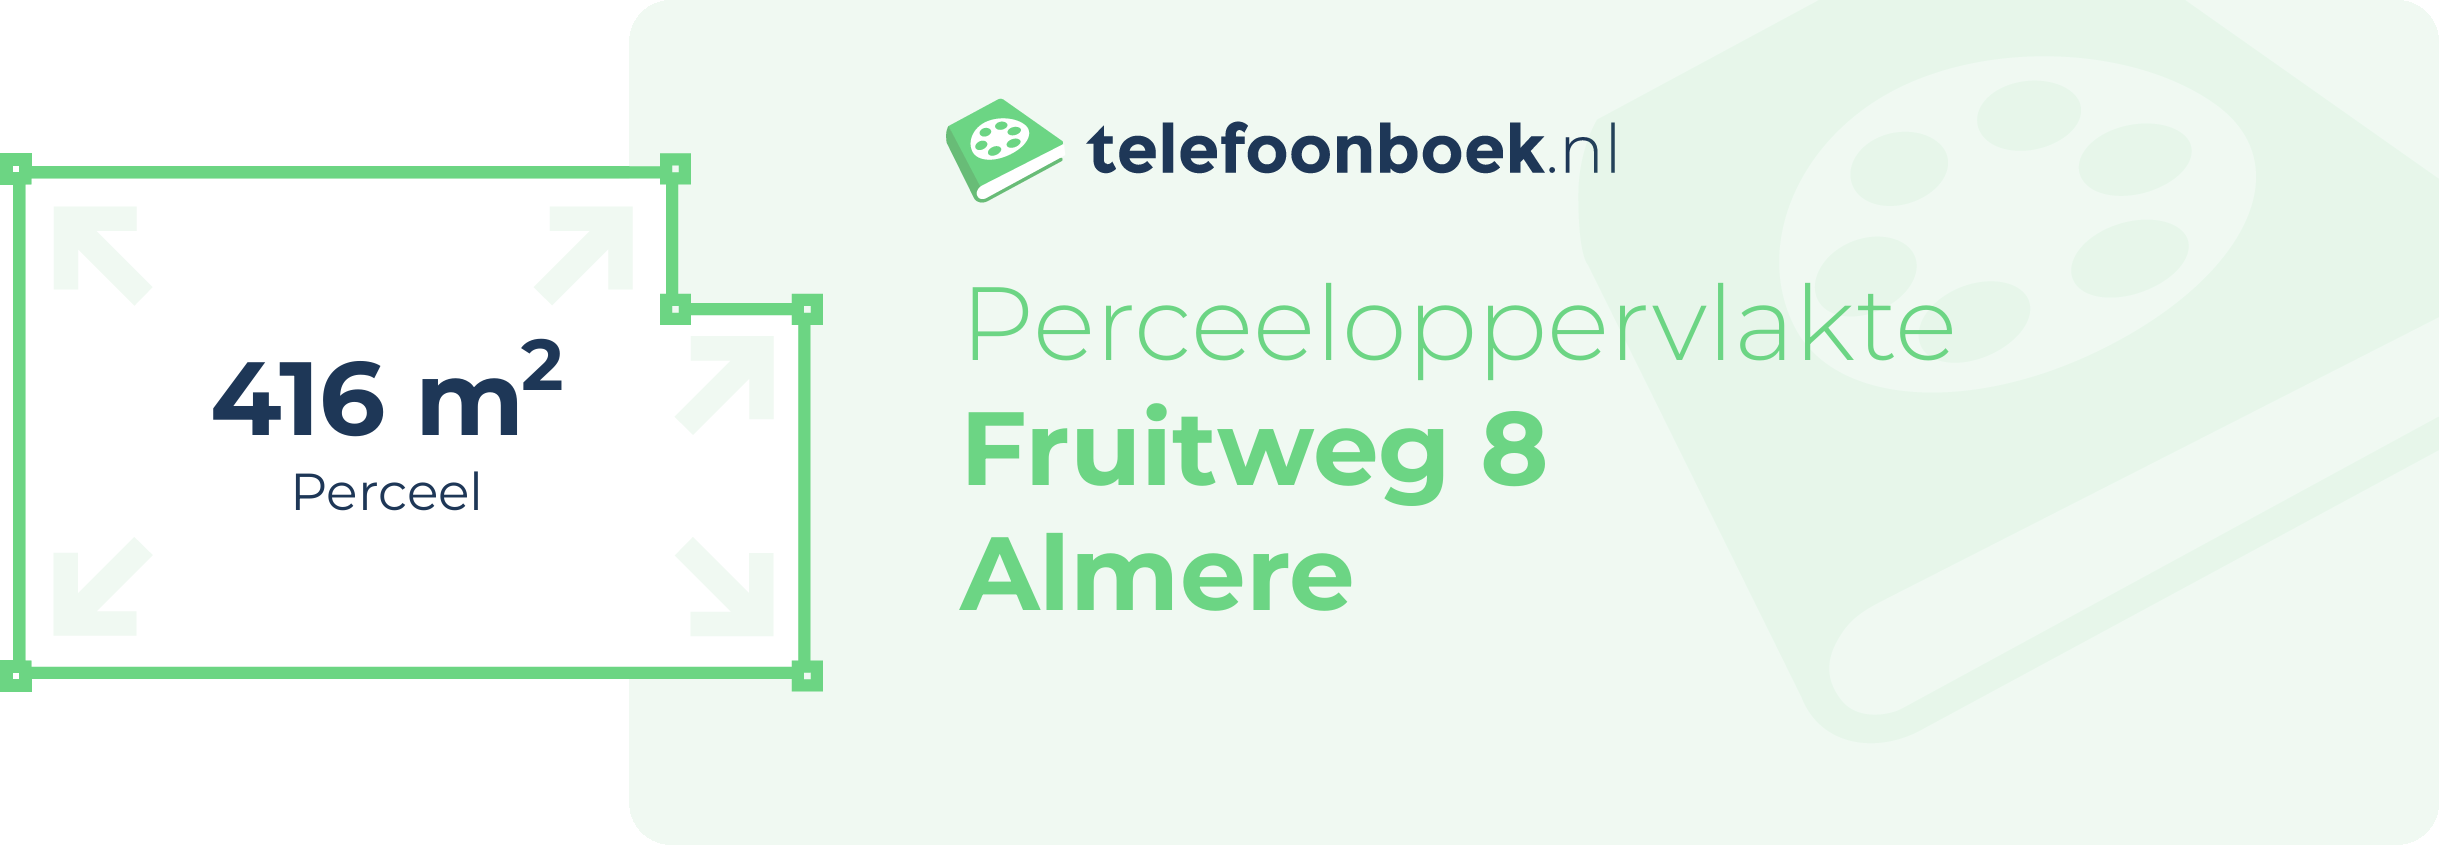 Perceeloppervlakte Fruitweg 8 Almere